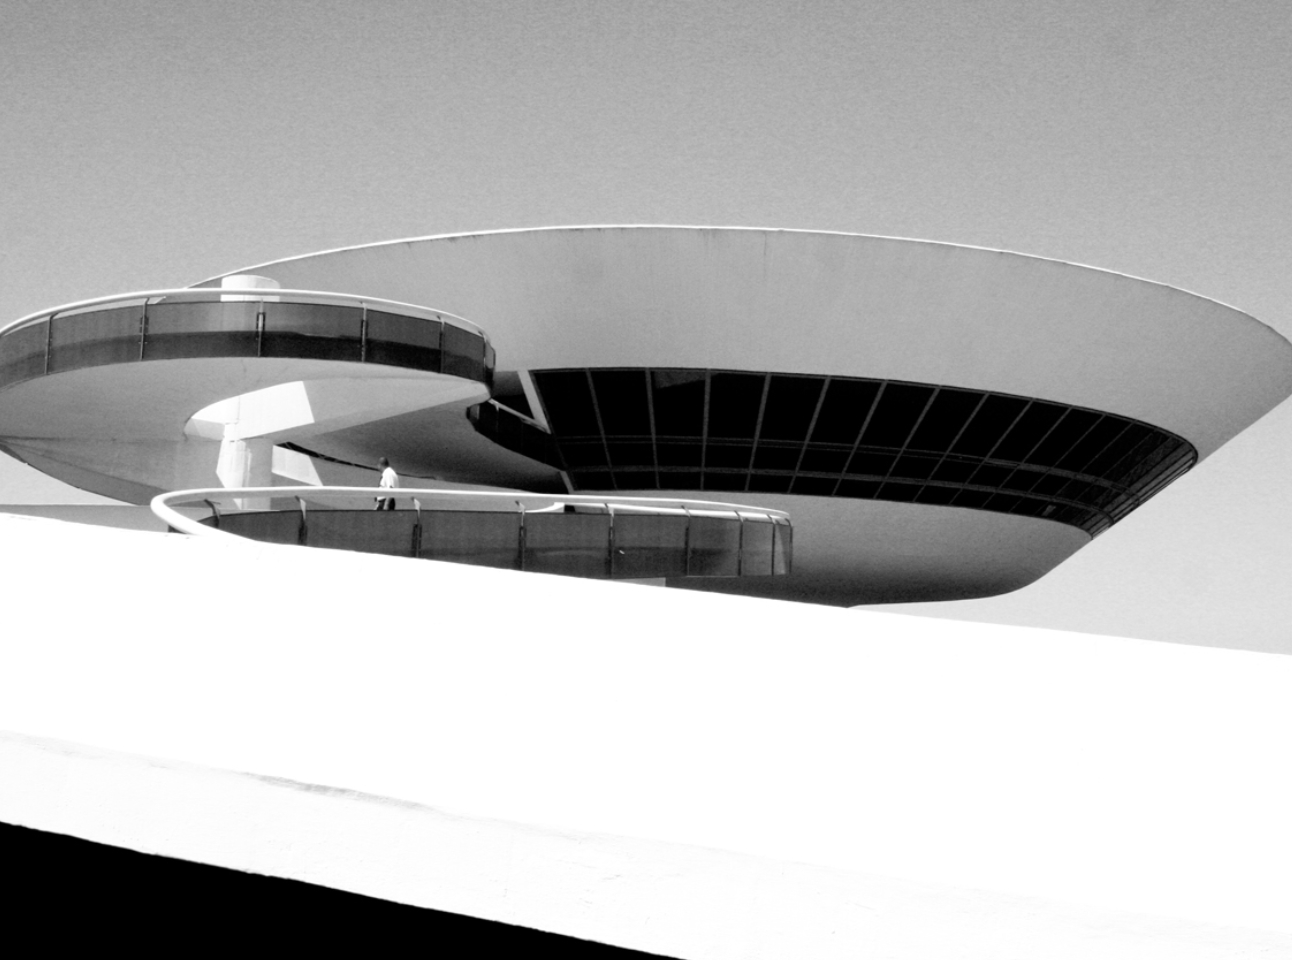 Travel - Museu de Arte Contemporânea (Niemeyer), Niteroi/Brazil